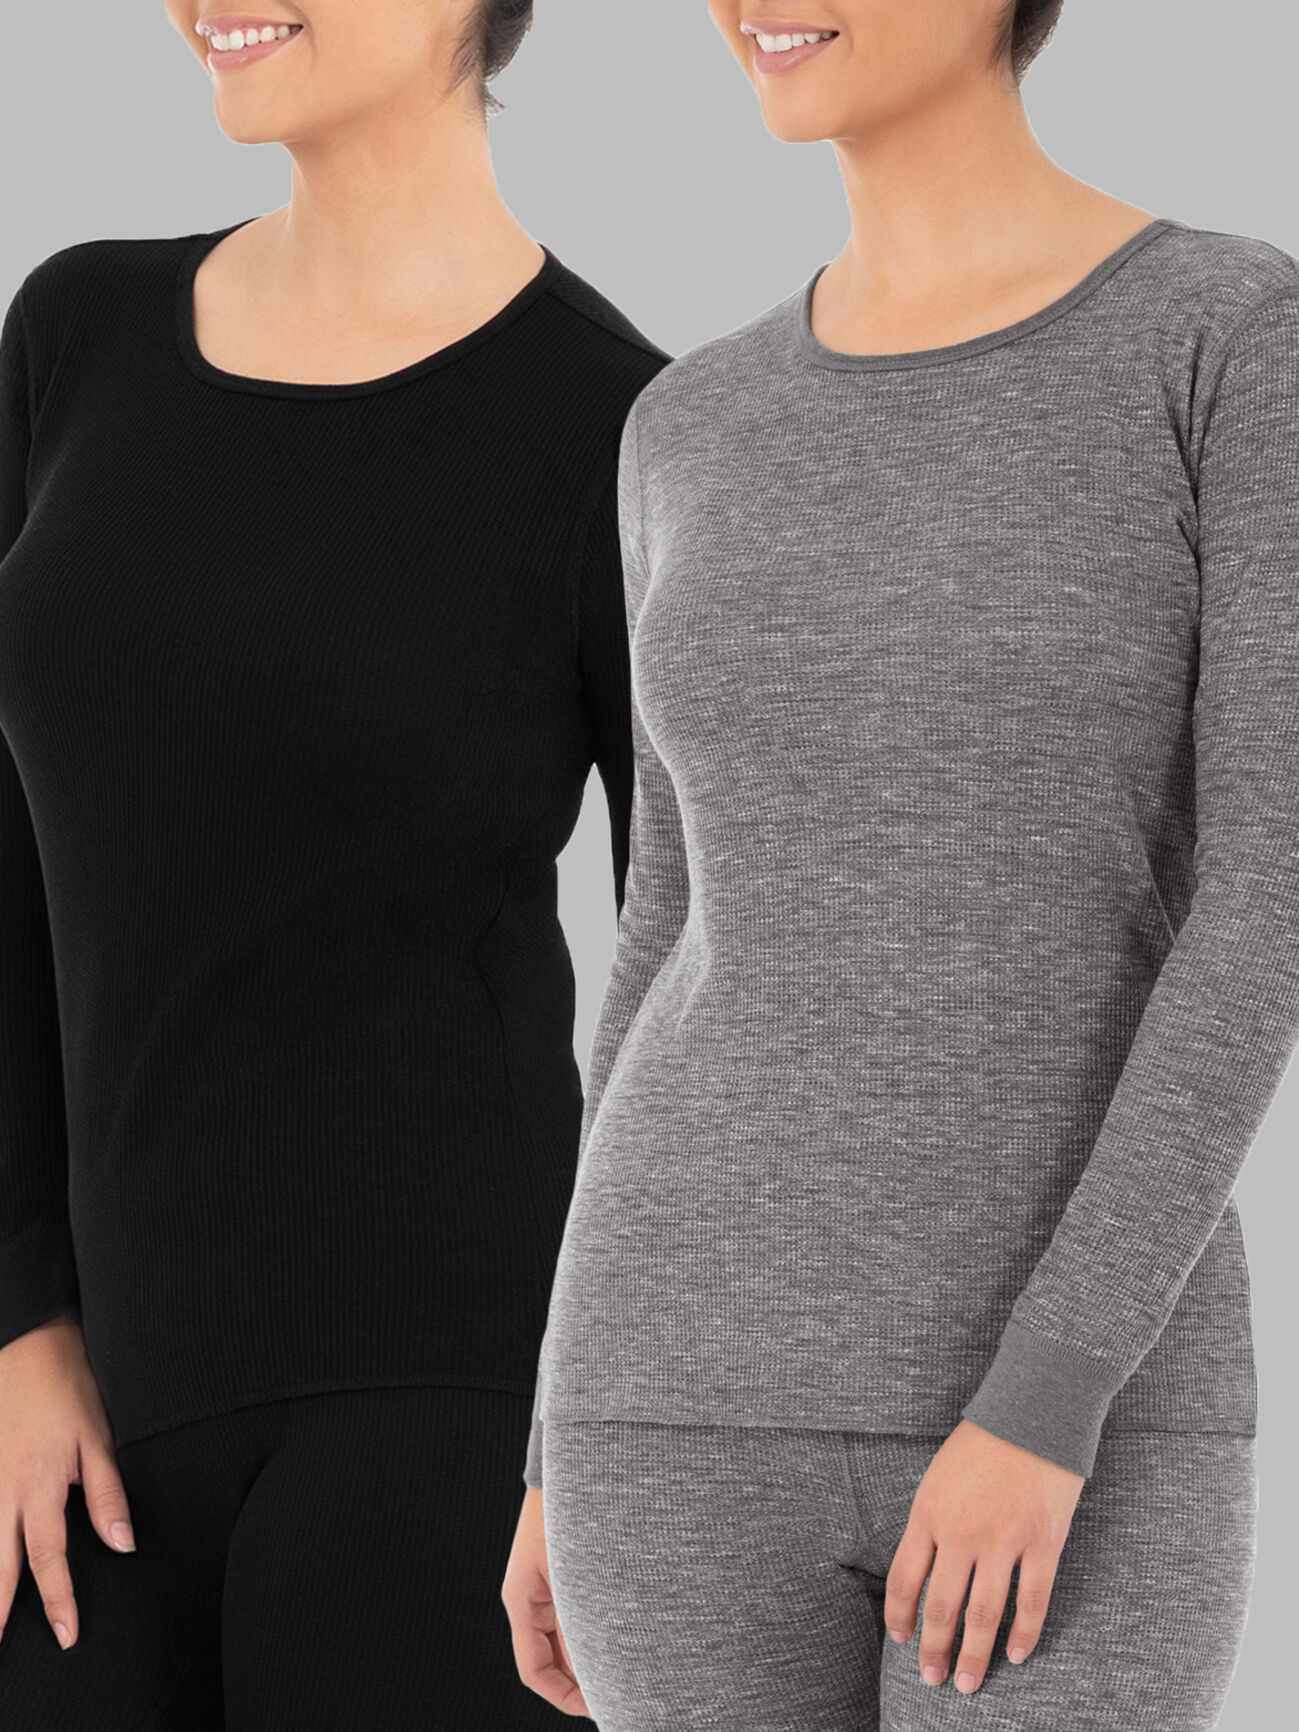 Women's 2-Pack Long-Sleeve Cotton-Blend Seamless Fabric